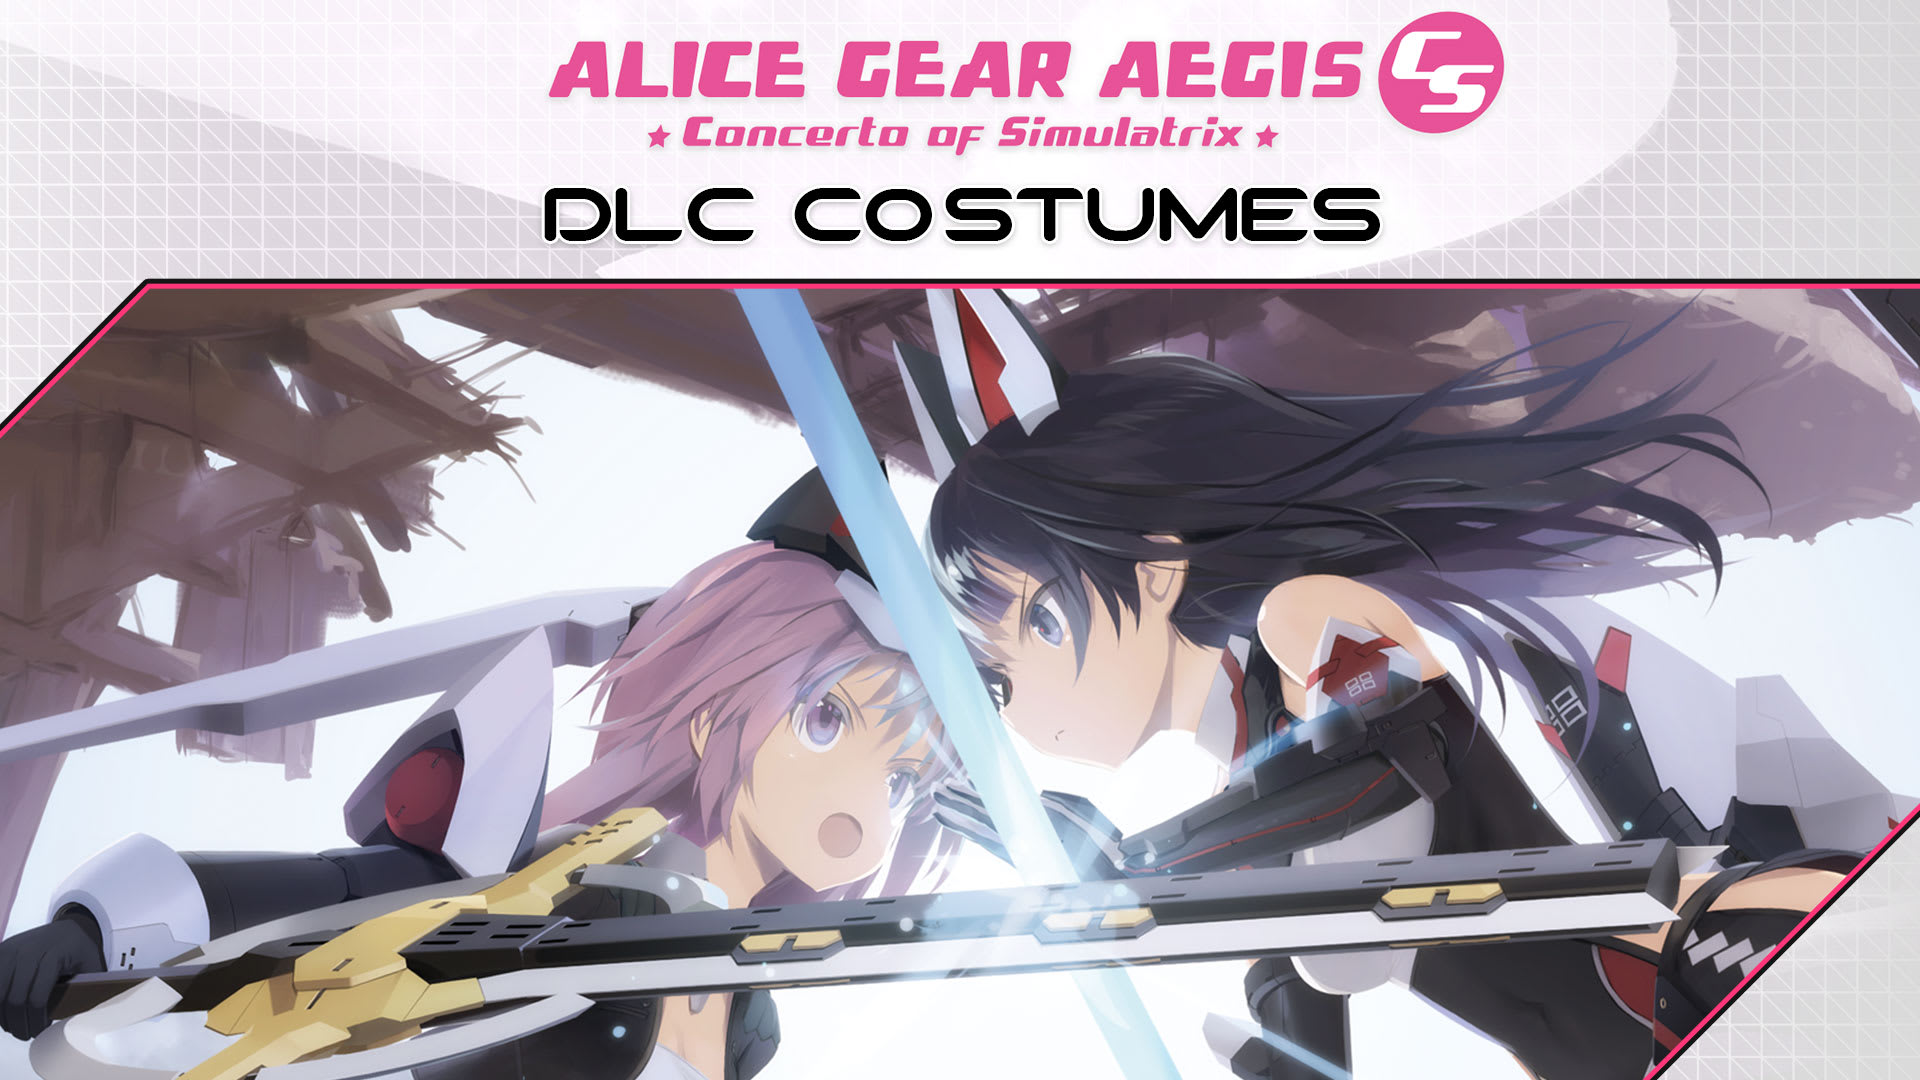 Alice Gear Aegis CS Concerto of Simulatrix DLC Costumes